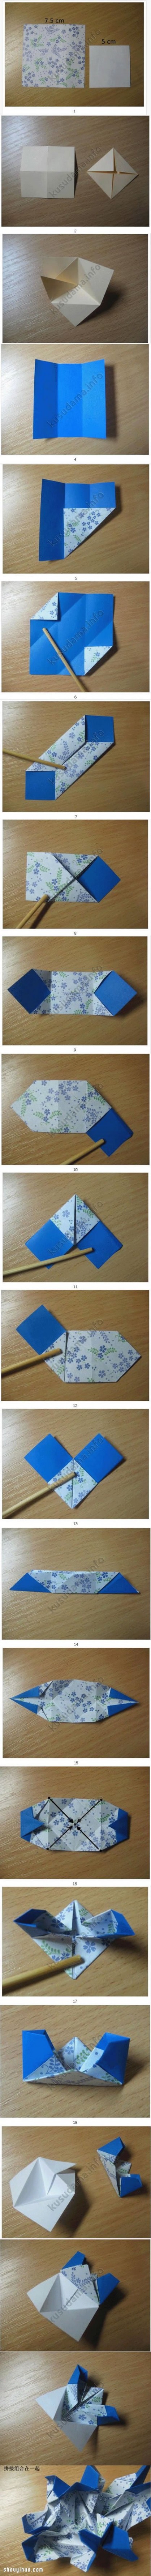 樱草花 樱草花球的折法图解 手工折纸制作樱草花球